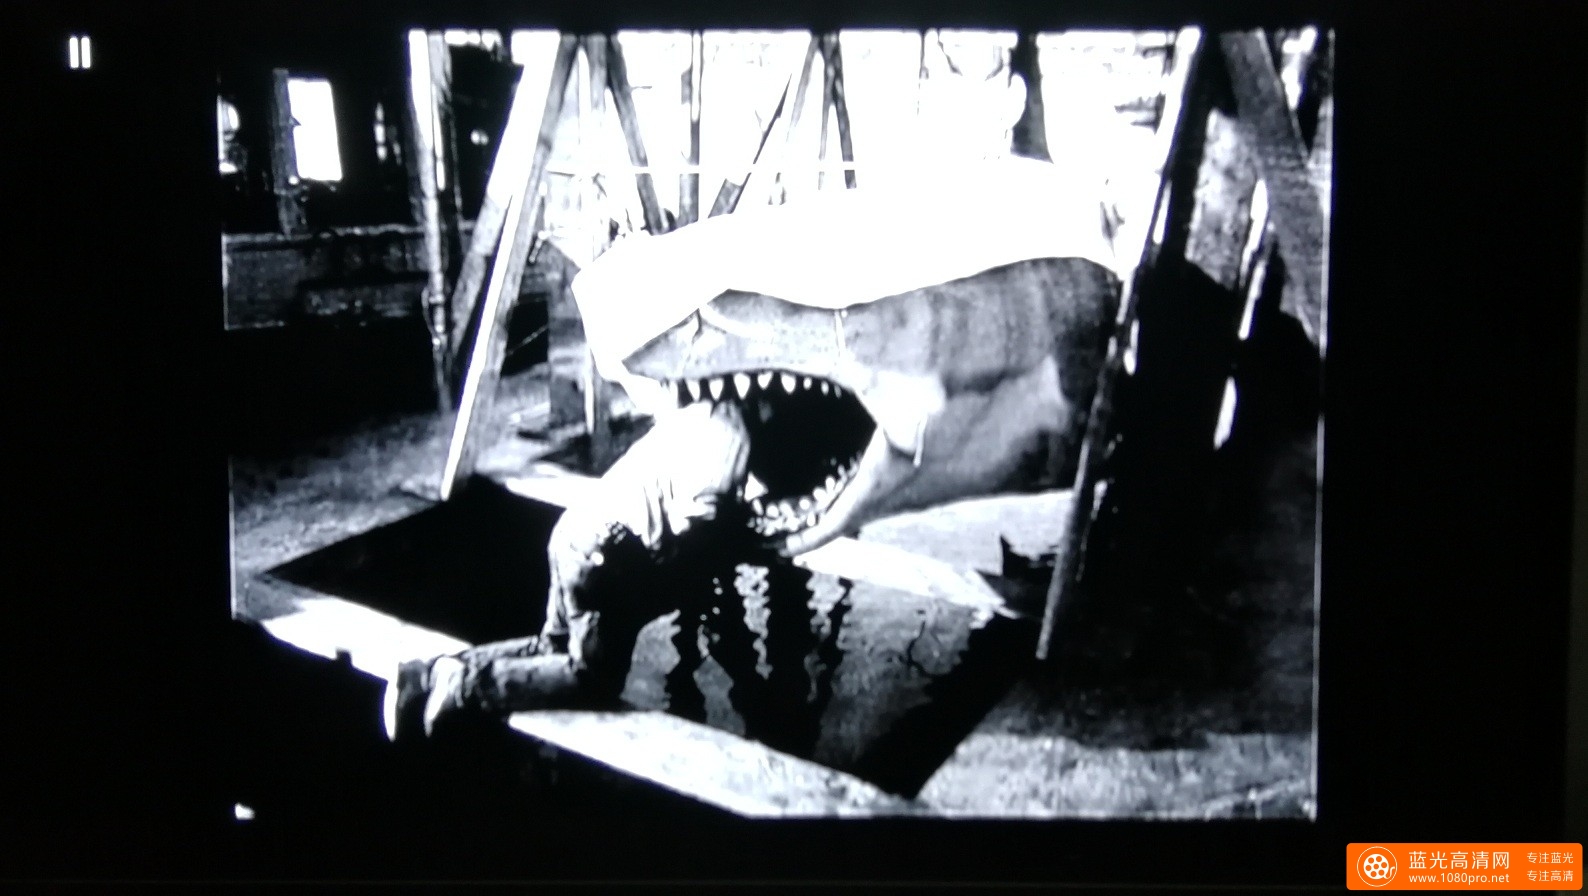 大白鲨4k，杜比视界屏摄,及部分花絮图片分享。-8.jpg